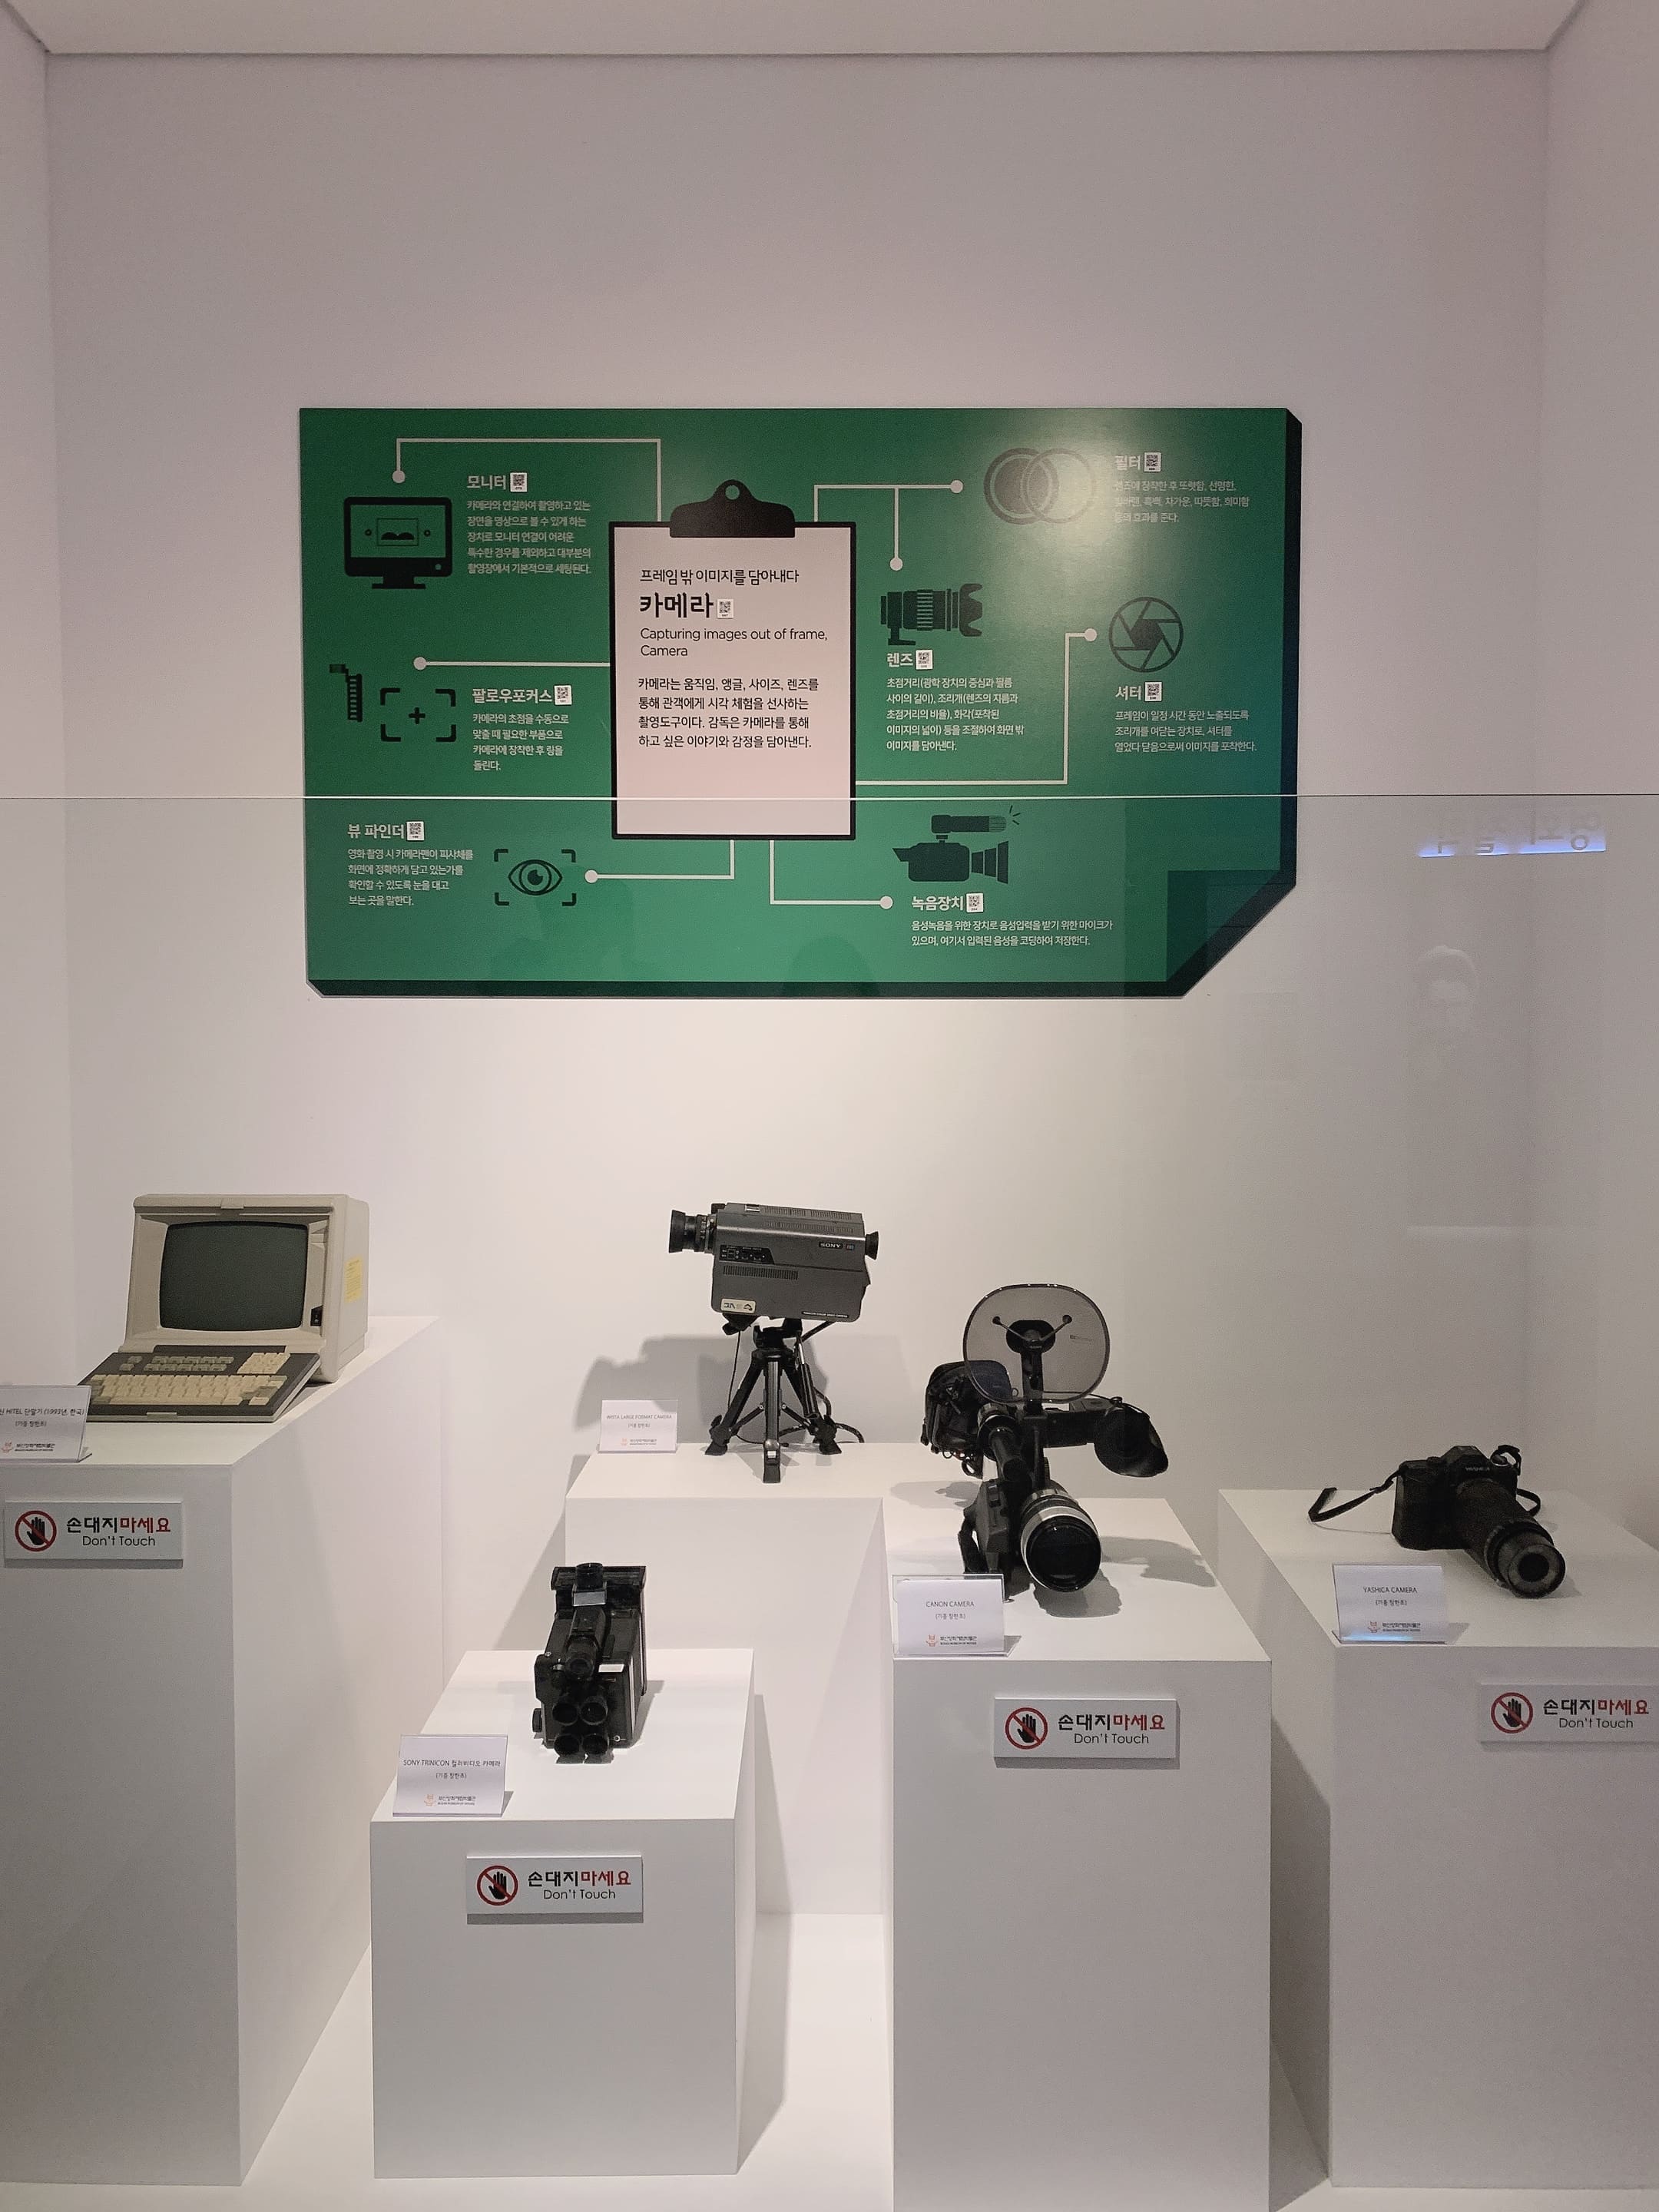 부산영화체험박물관 카메라 관련 장비